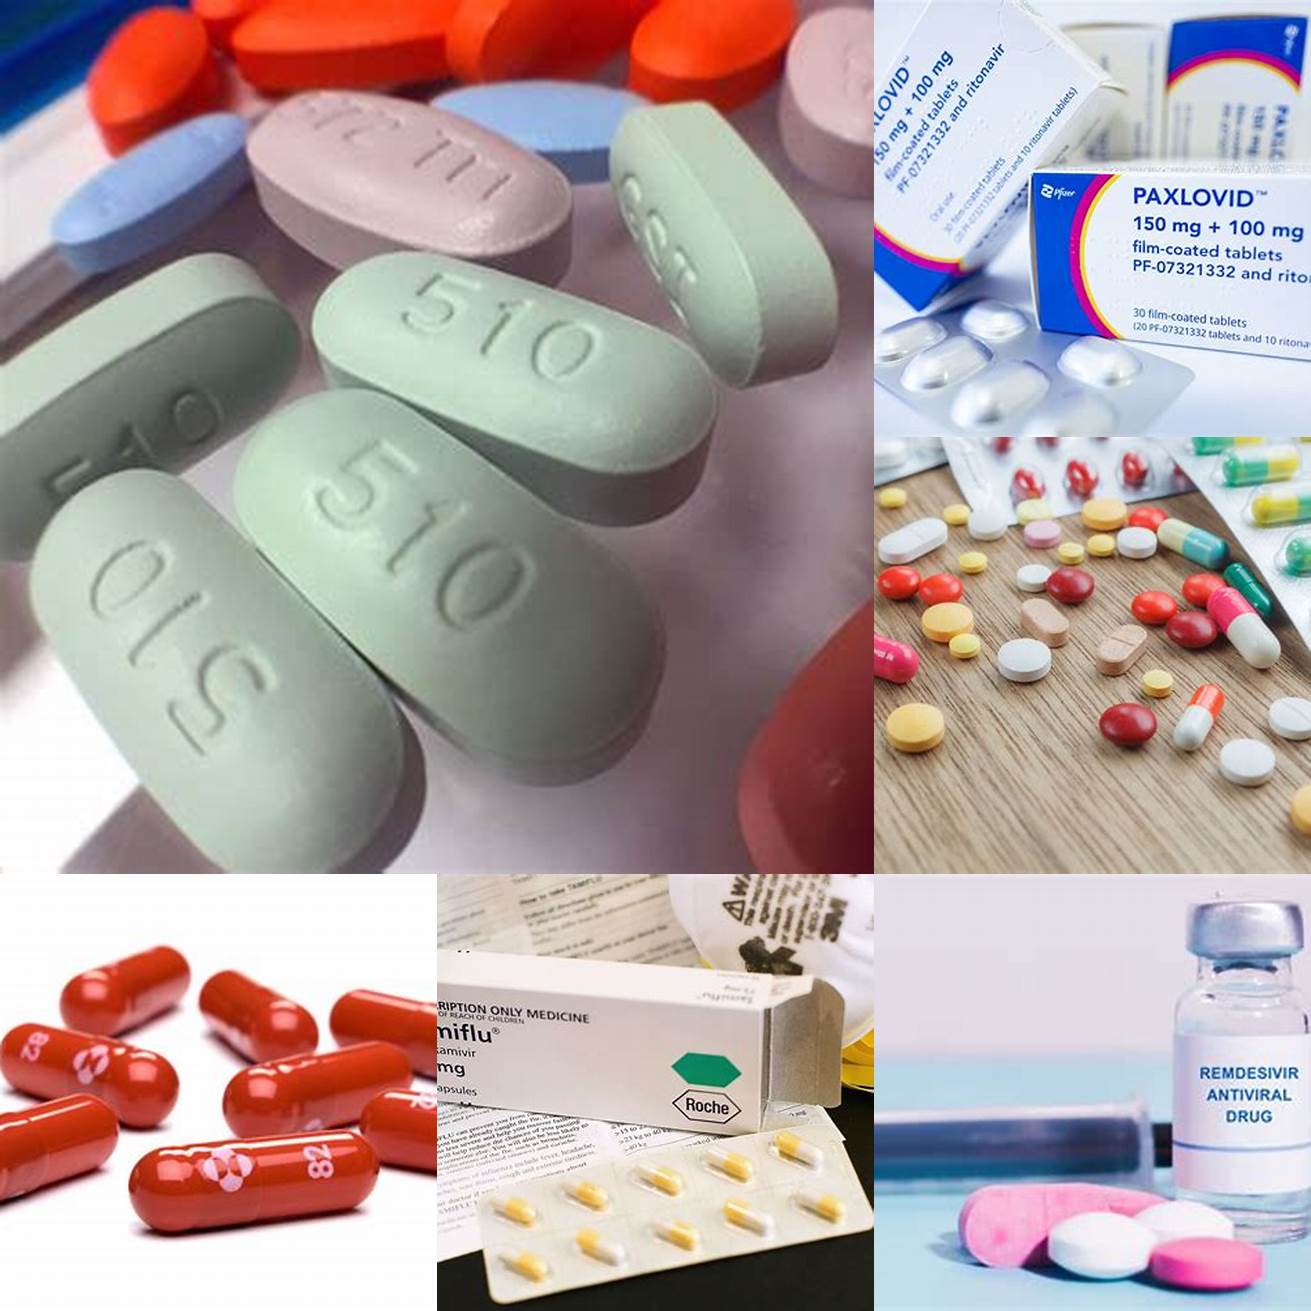 Antibiotics or antiviral medication